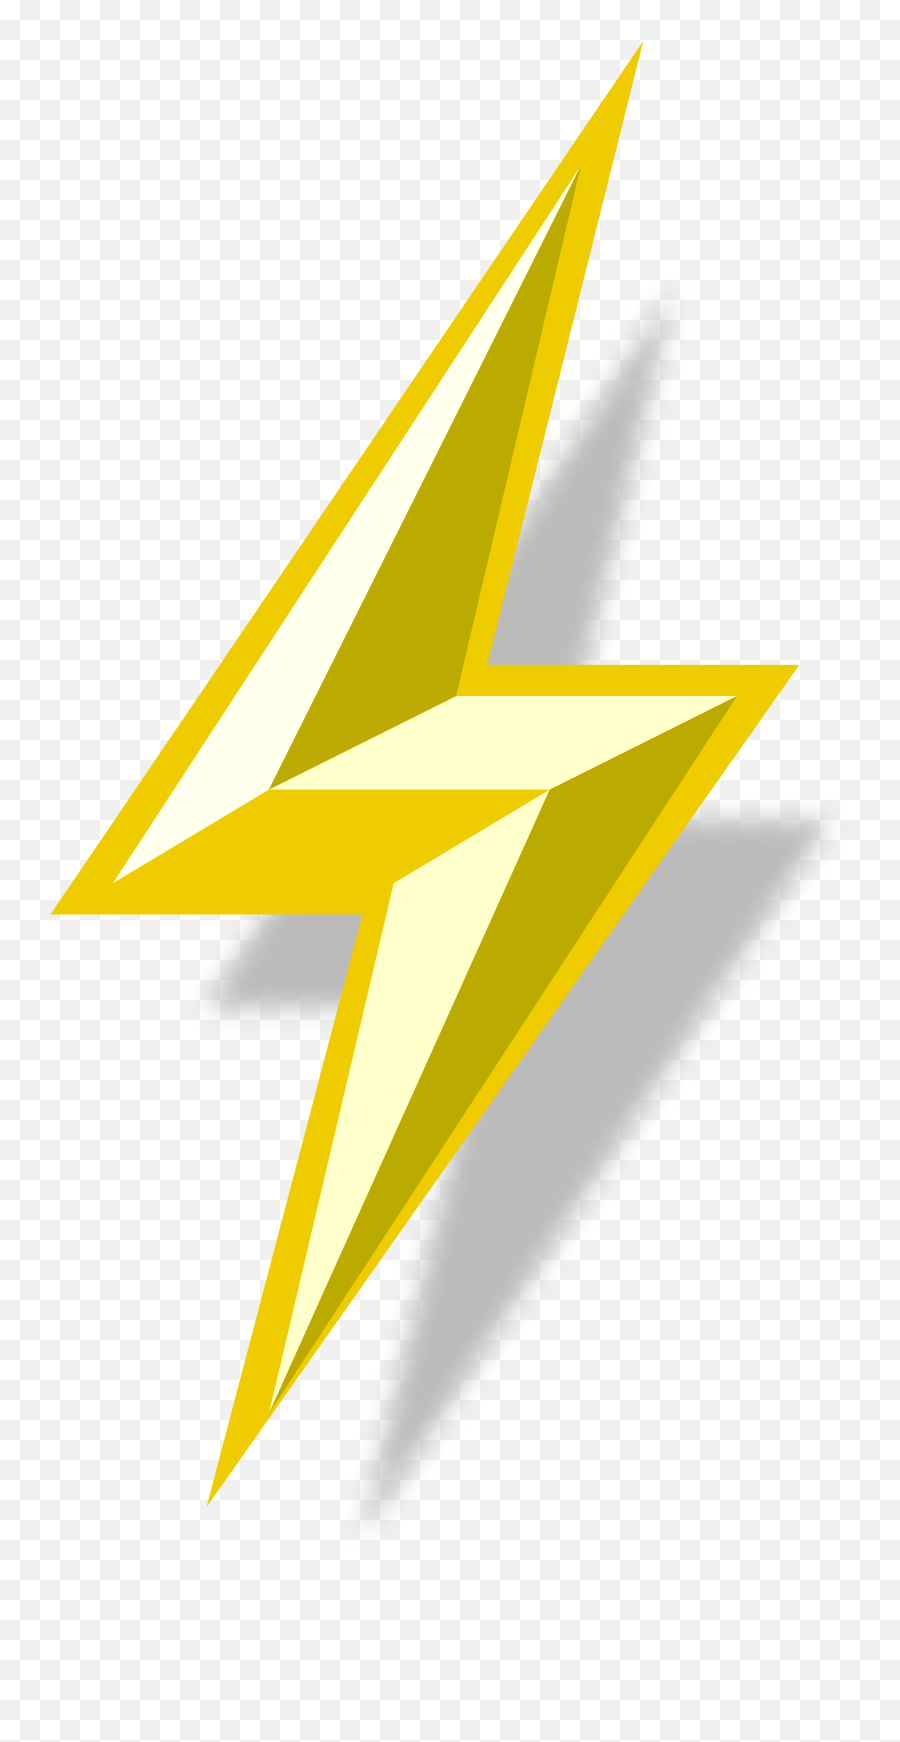 Lightning Bolt Png 6 Image - Lightning Bolt Png Transparent,Lightning Bolt Transparent Background